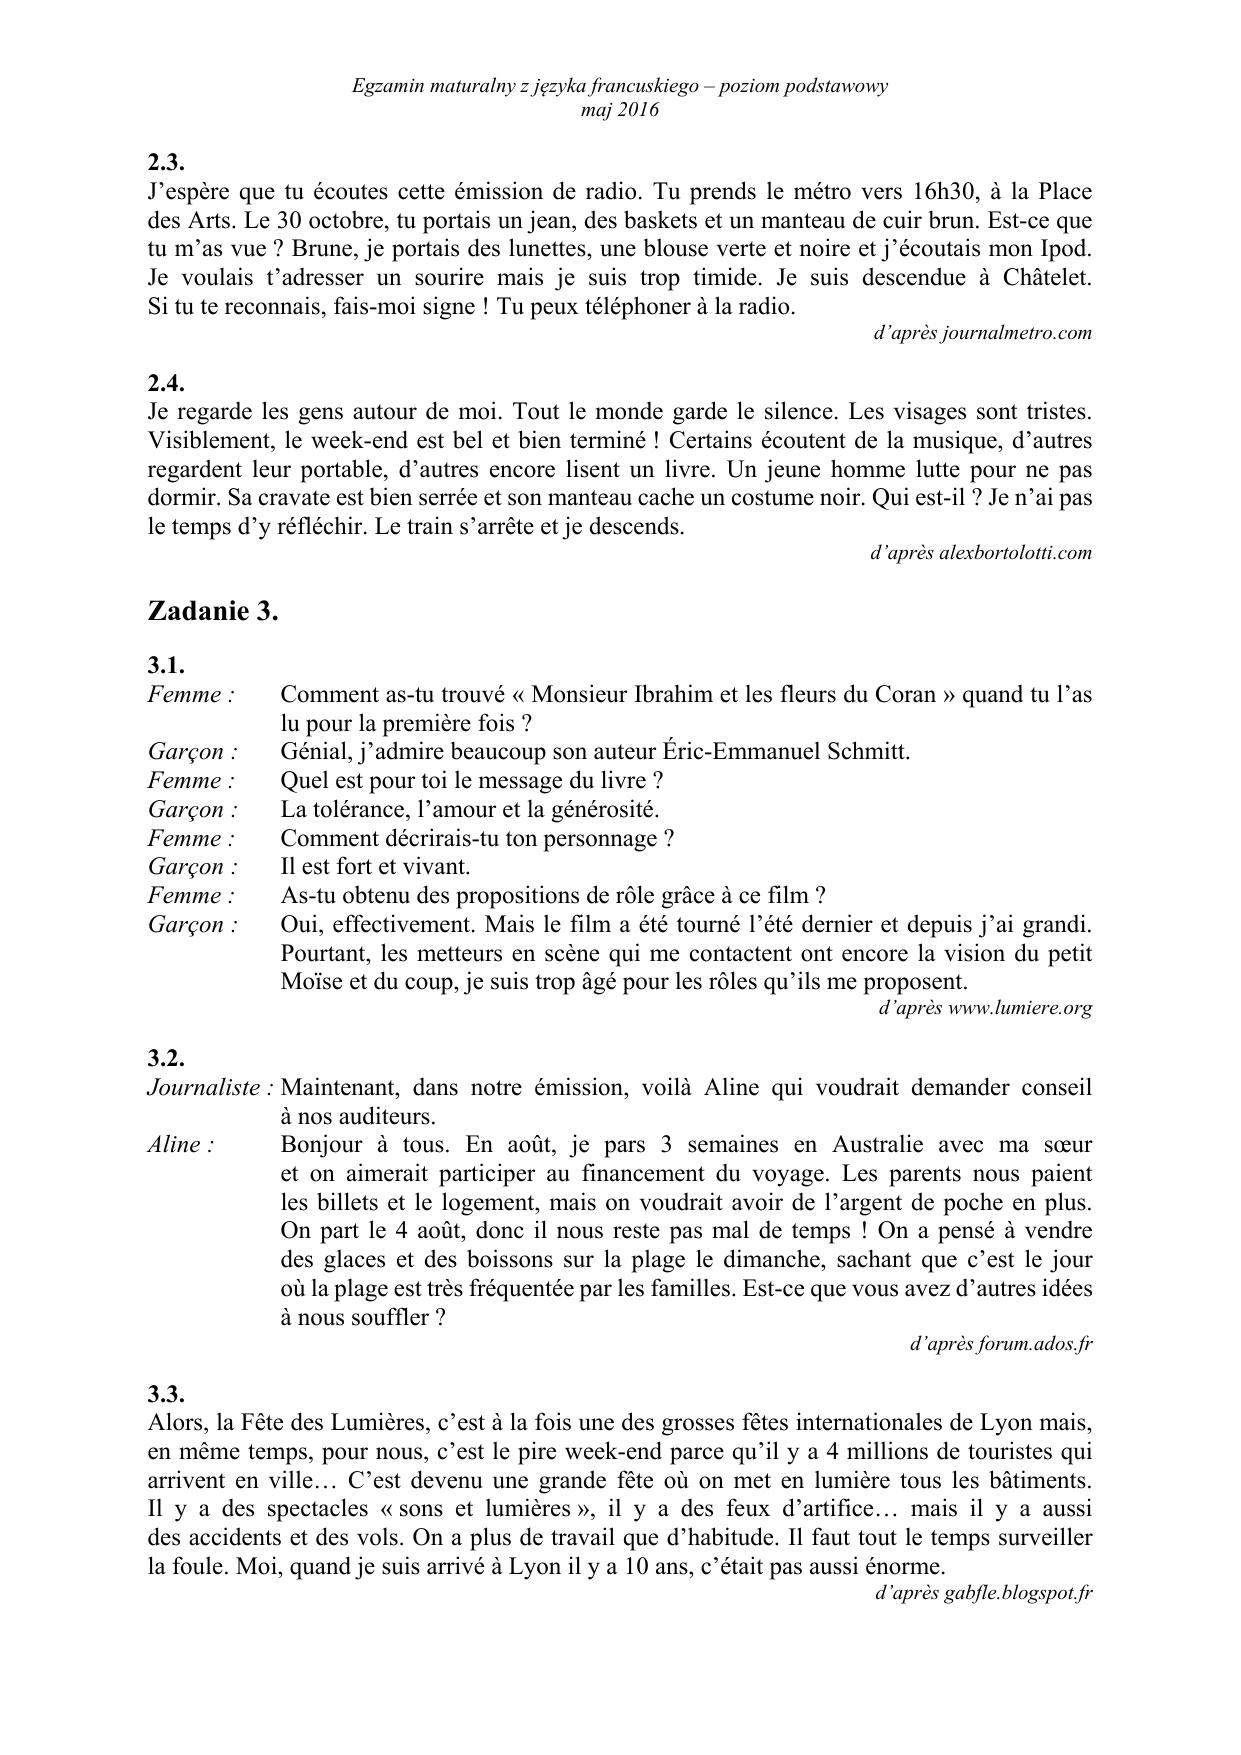 francuski-matura-2016-p-podstawowy-transkrypcja-2